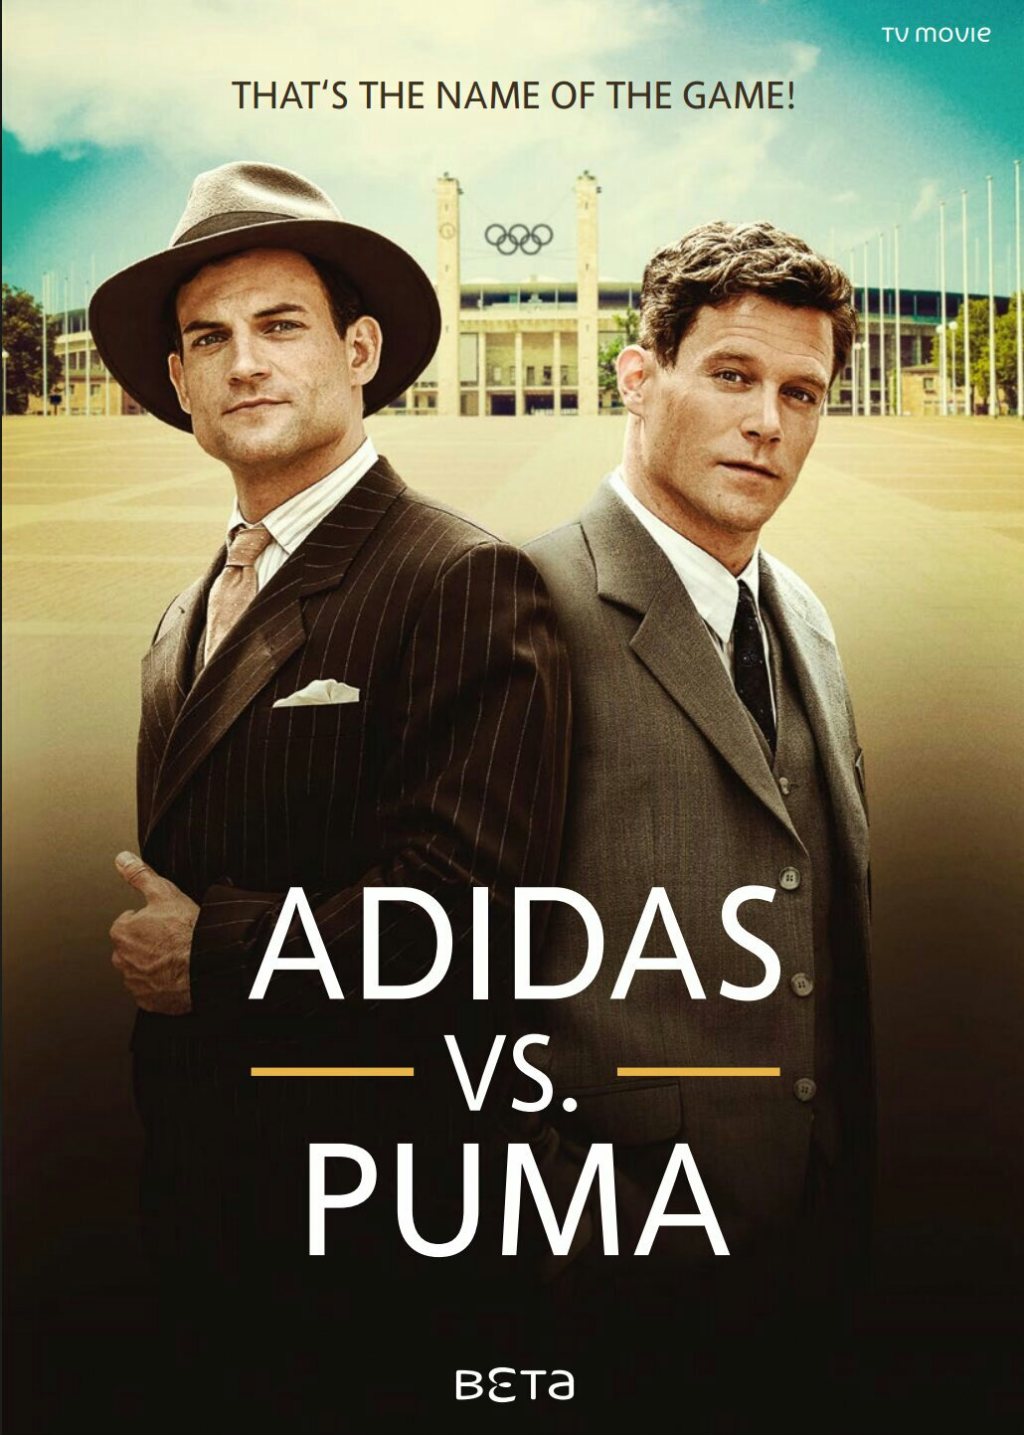 Lírico Eficiente Gastos de envío Watch Adidas Vs. Puma: The Brother's Feud on Netflix Today! |  NetflixMovies.com